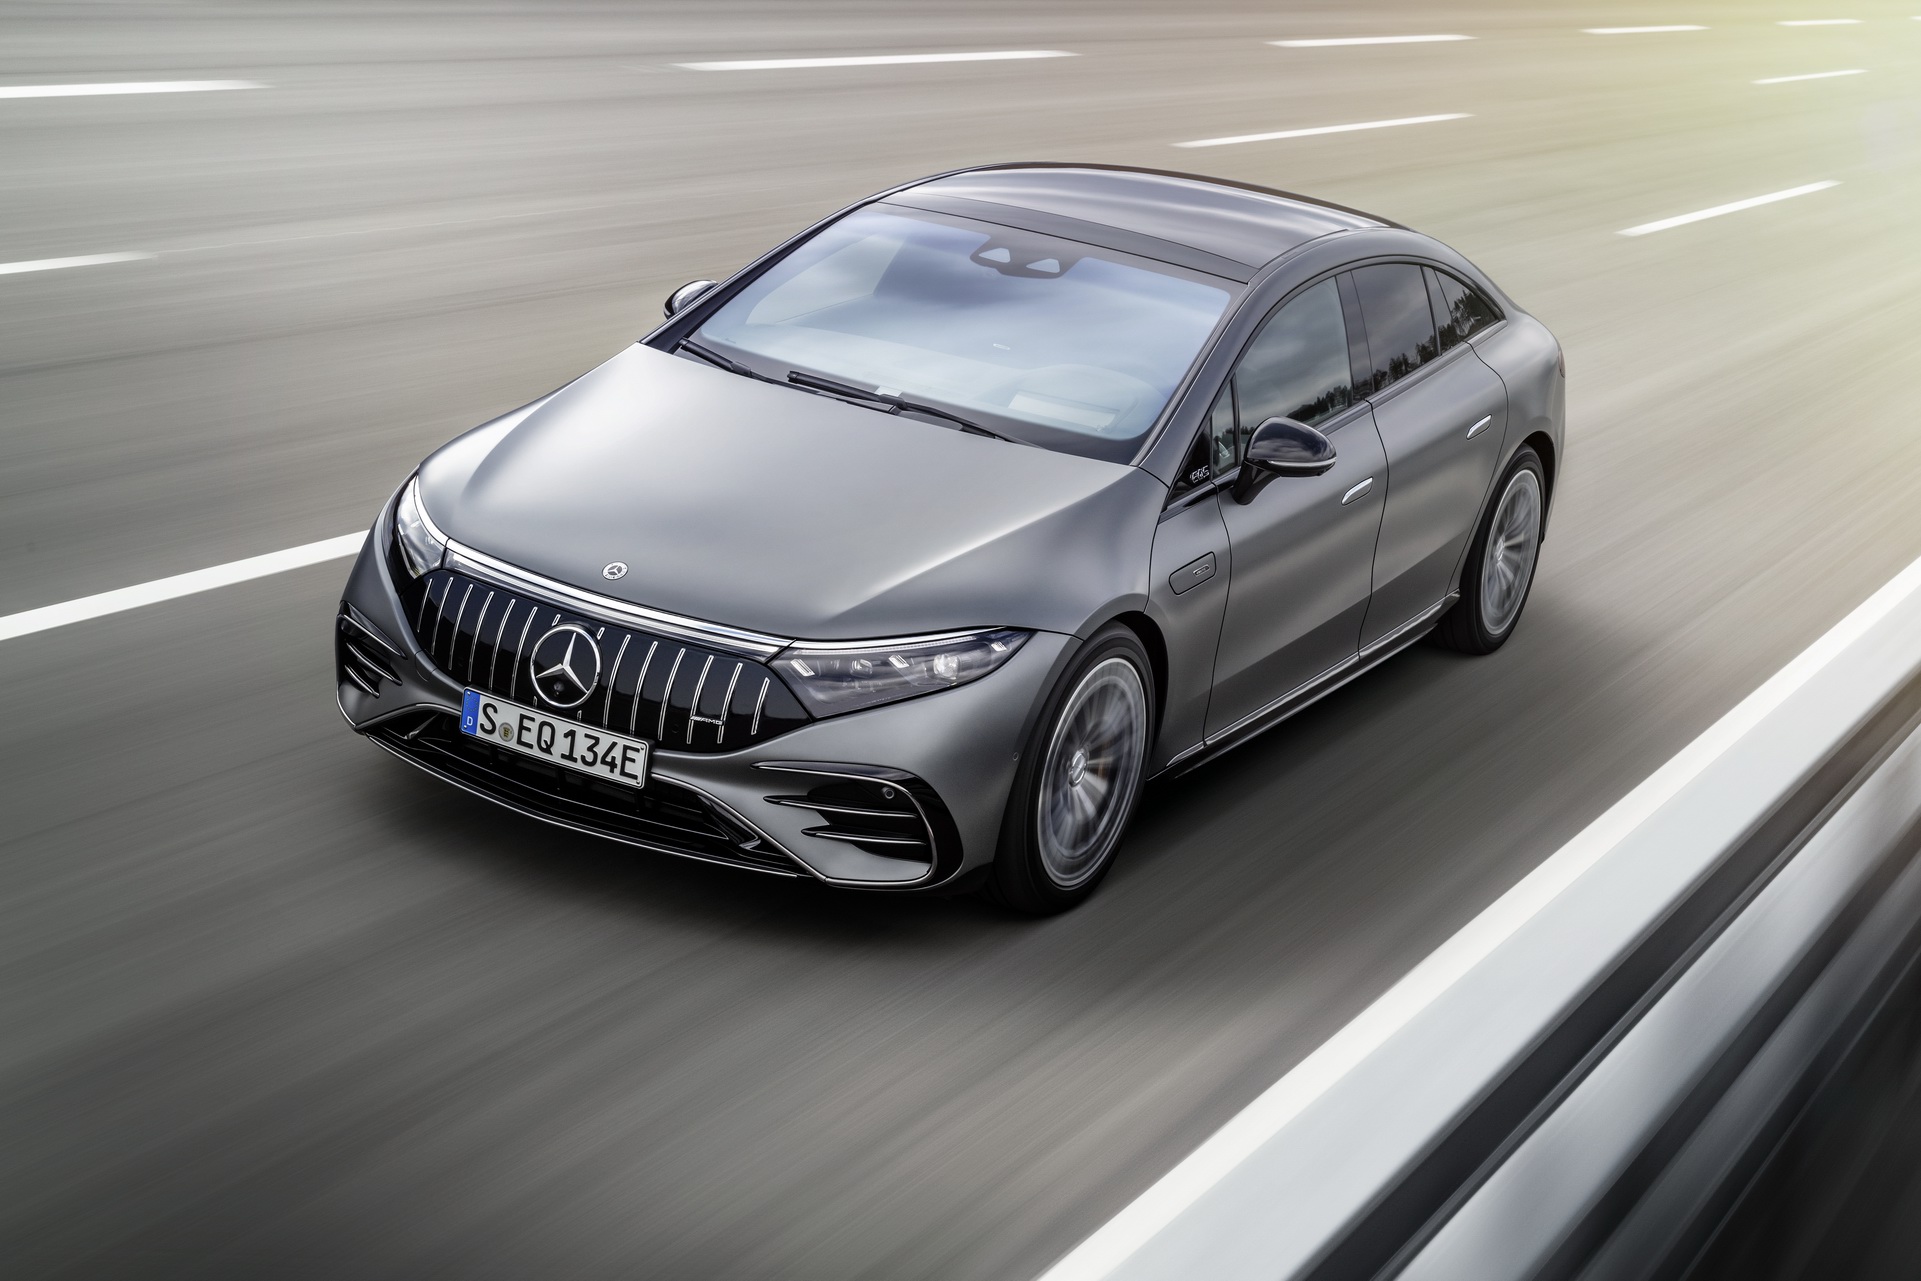 Xe điện Mercedes-Benz giờ có cả gói "nâng cấp tăng tốc" khóa bằng phần mềm, giá 1200 USD 1 năm